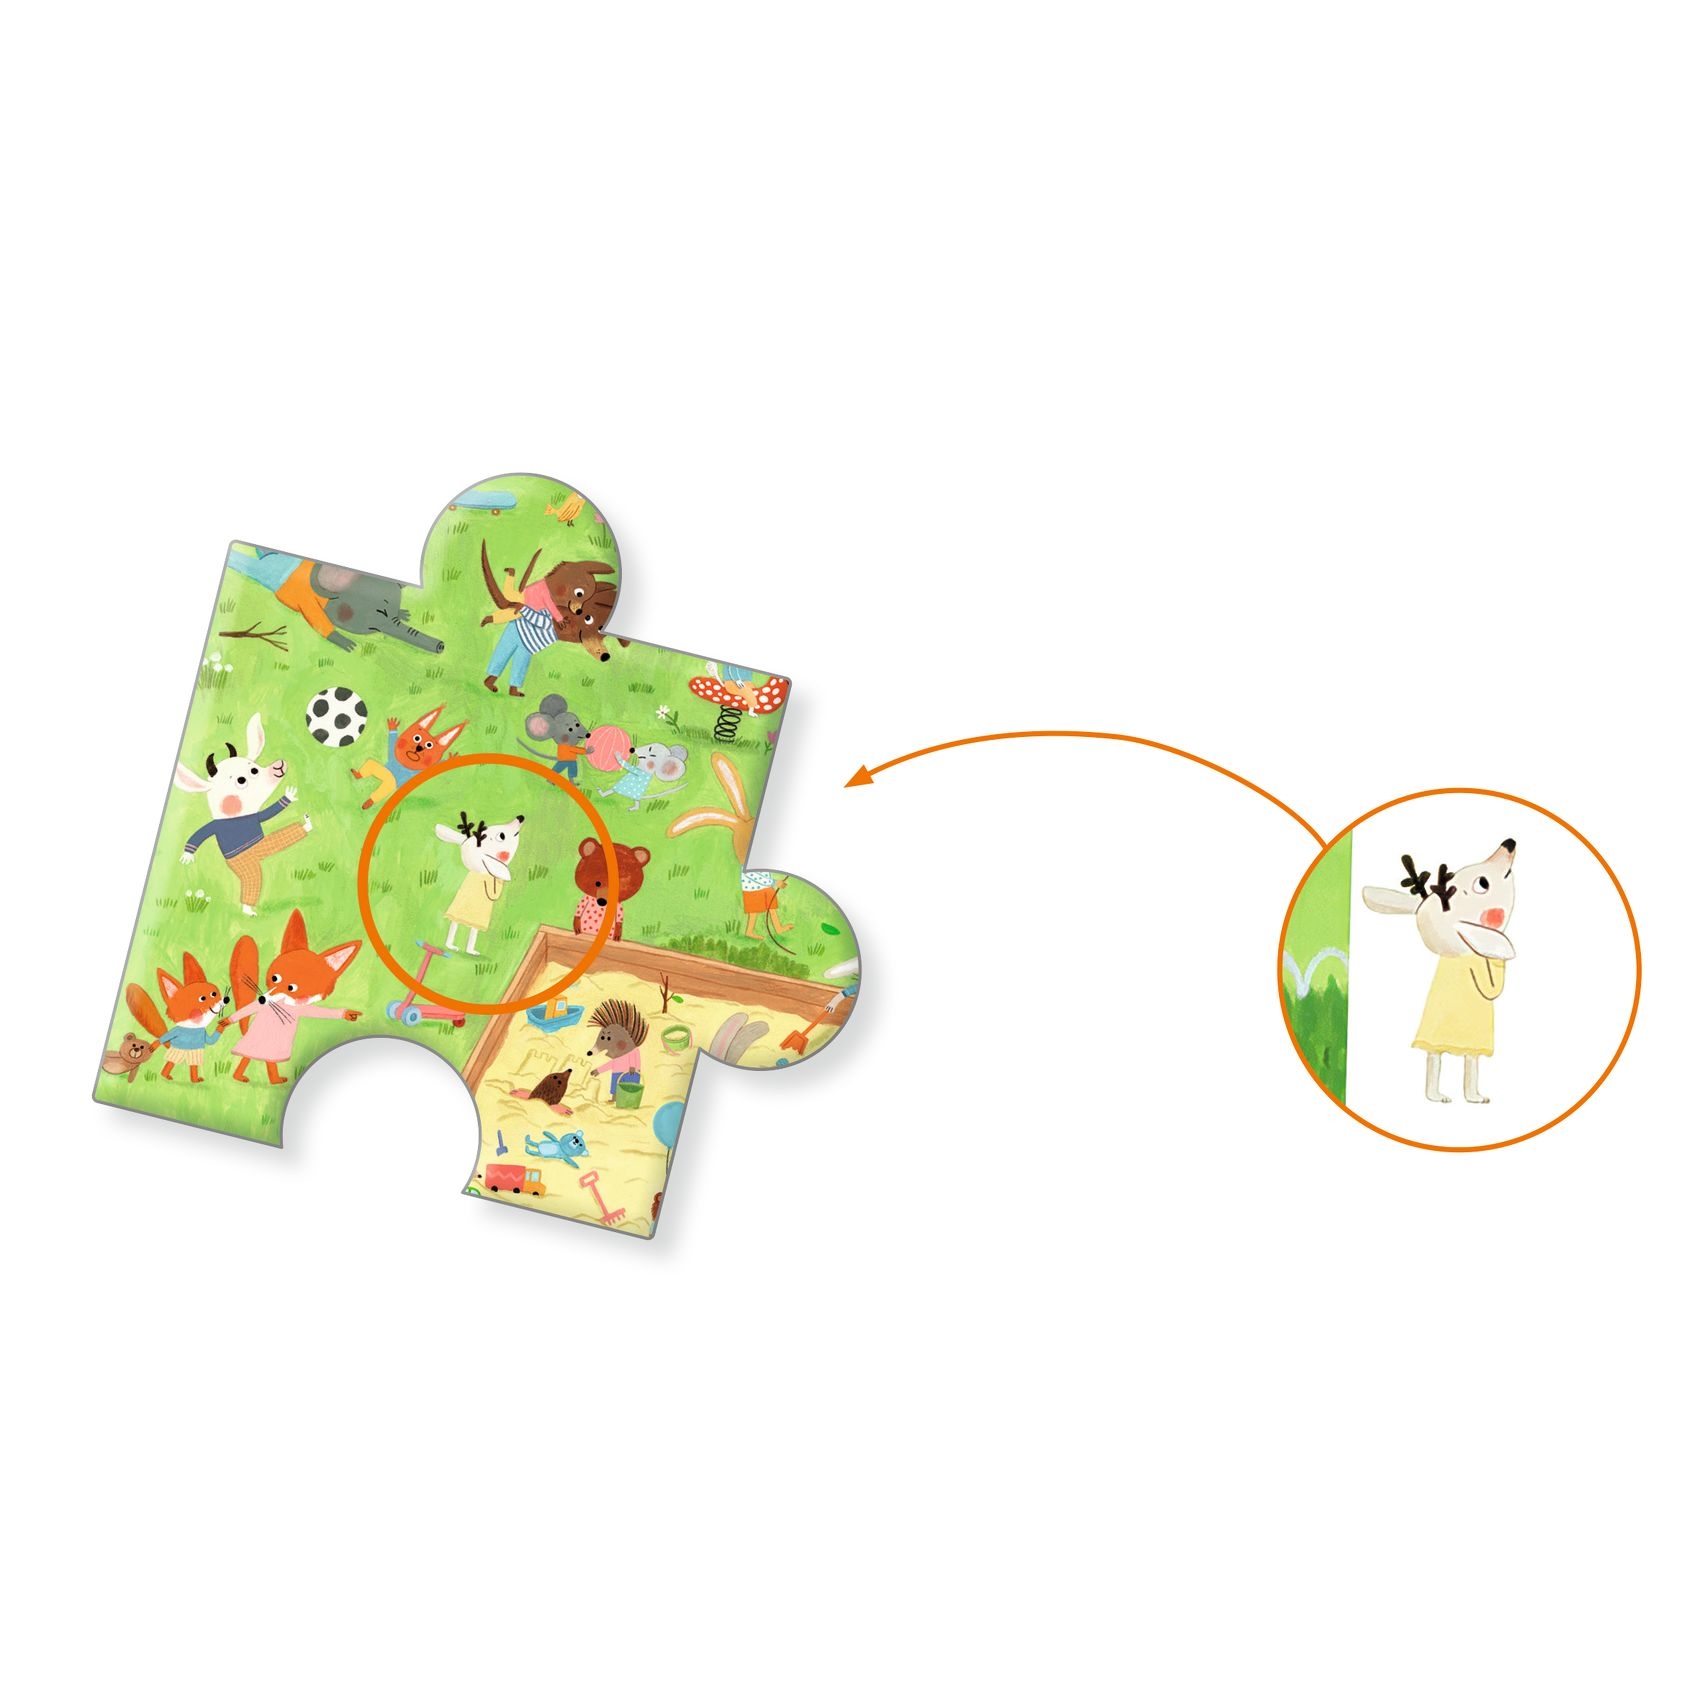 Megfigyeltető puzzle - Kisbarátok a kertben, 35 db-os - Little friends' garden - 35 pcs - FSC MIX - 4